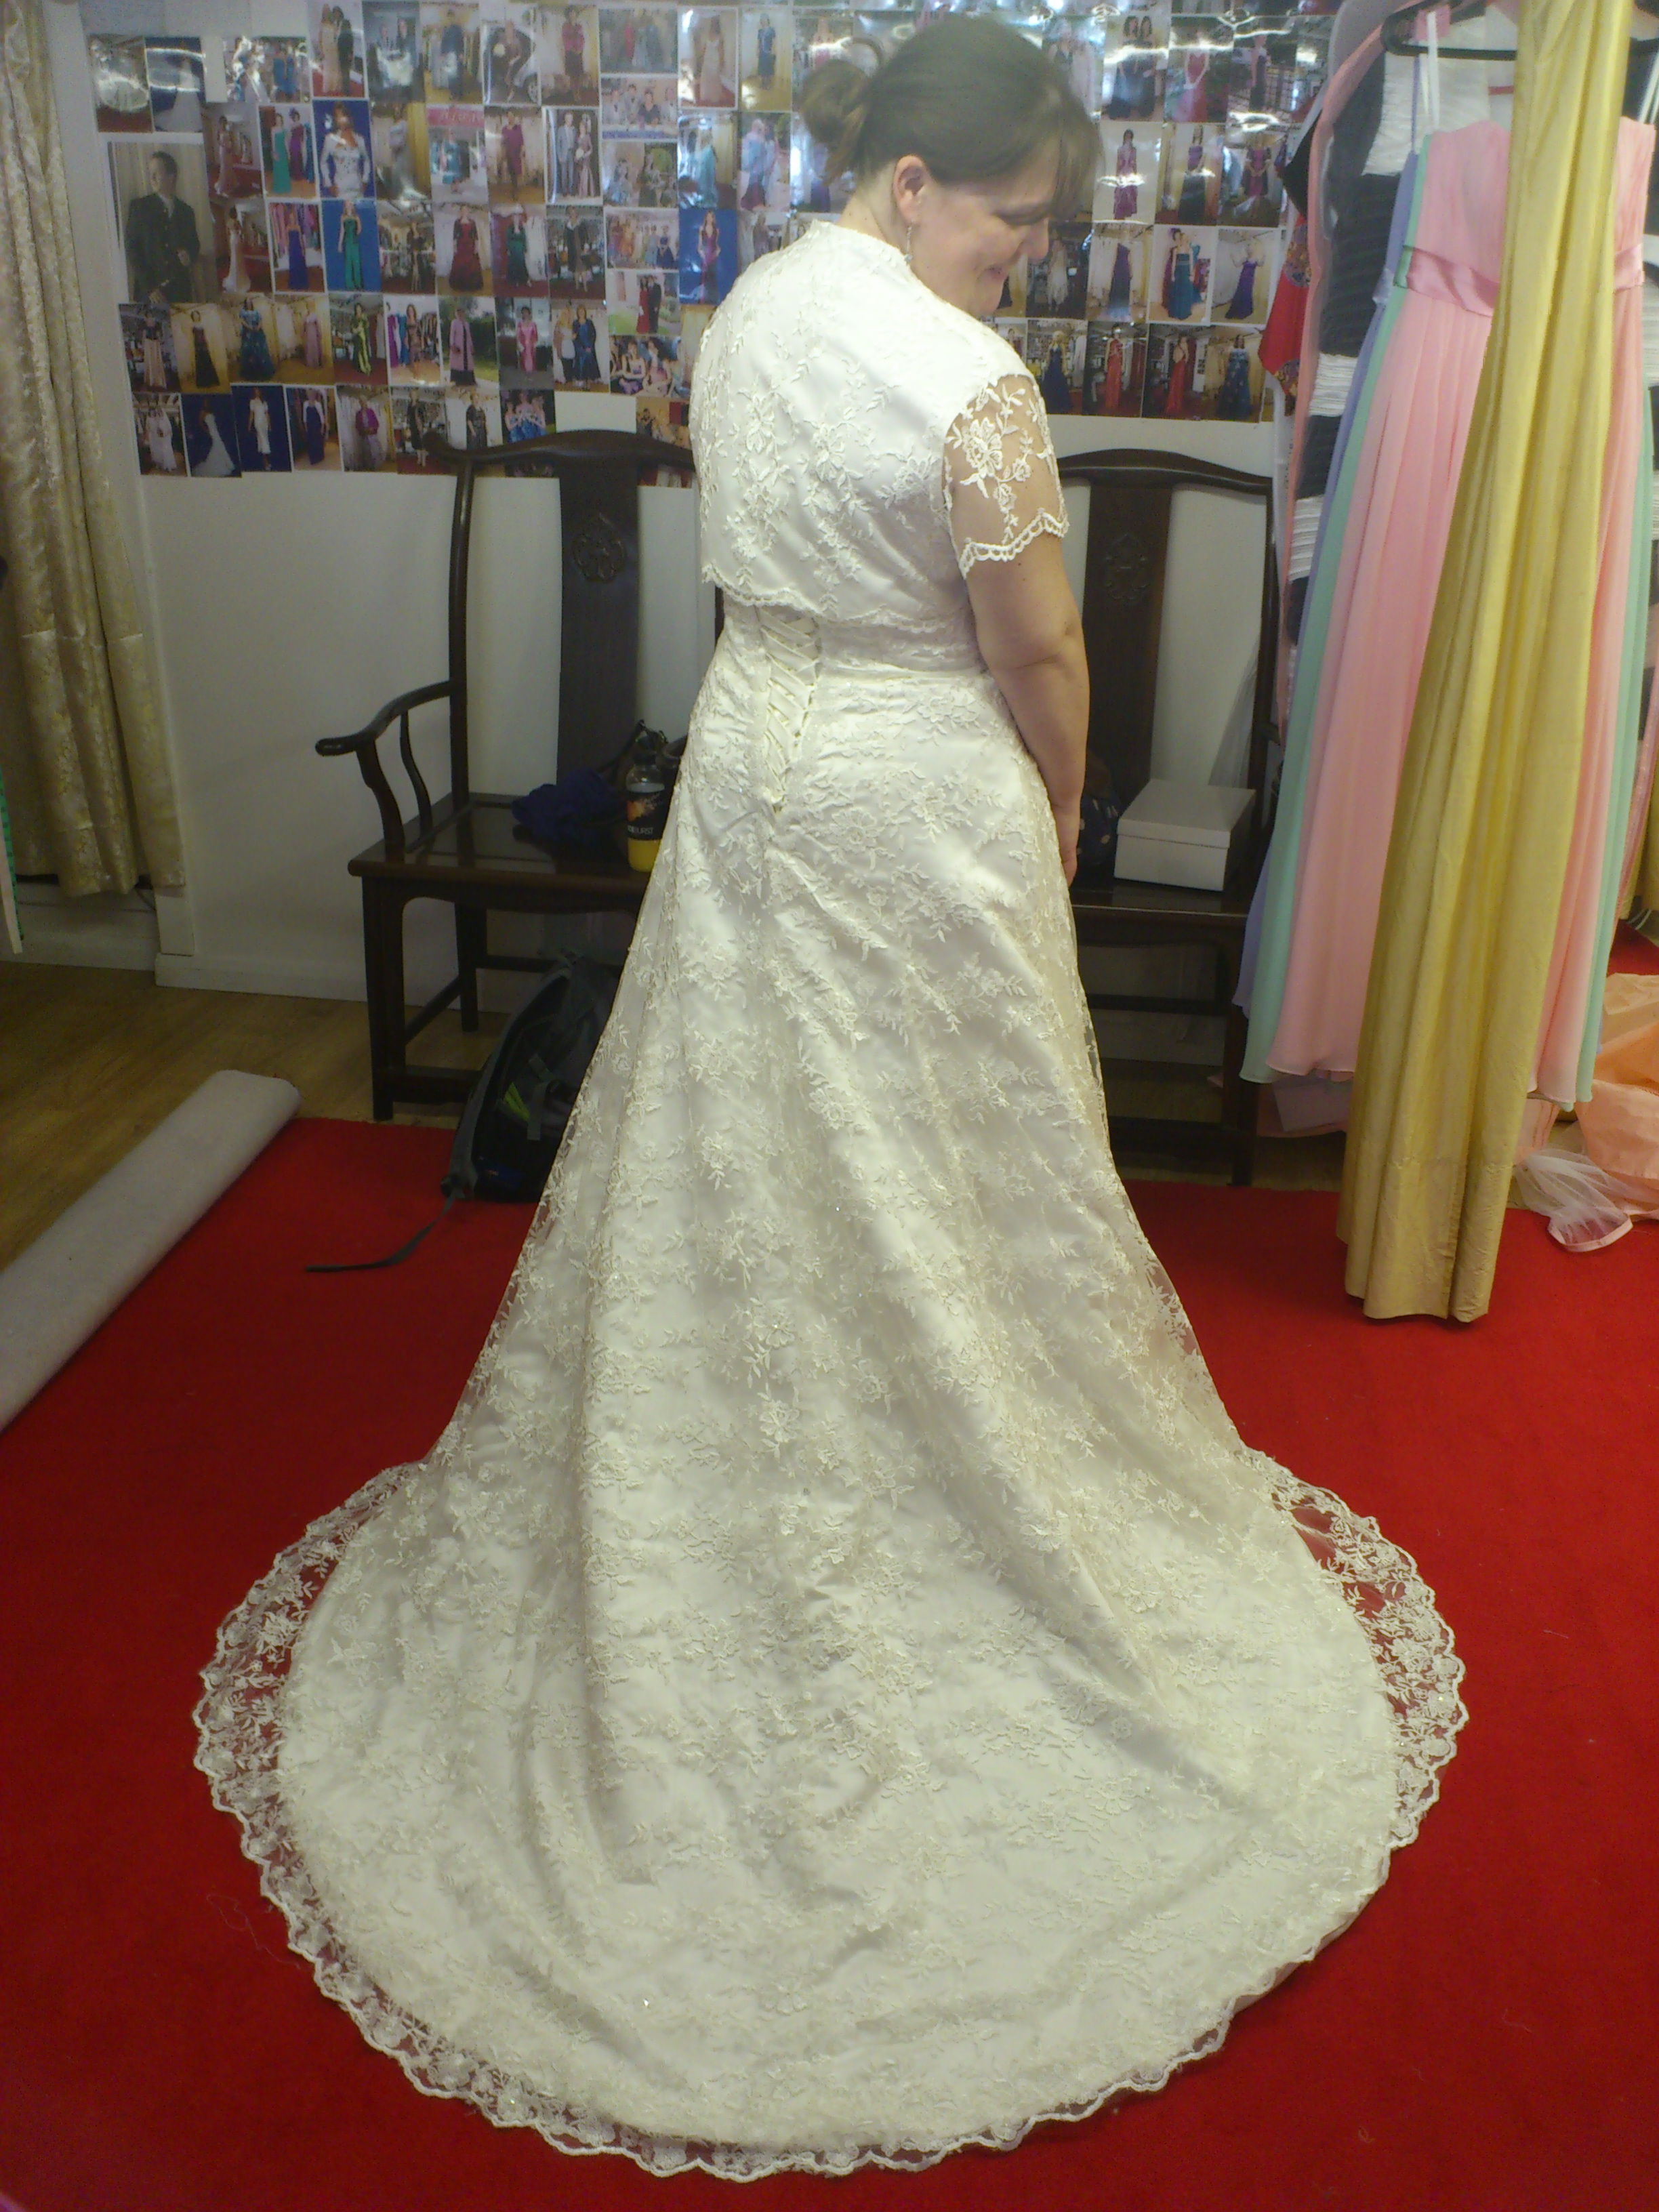 bespoke lace wedding dress